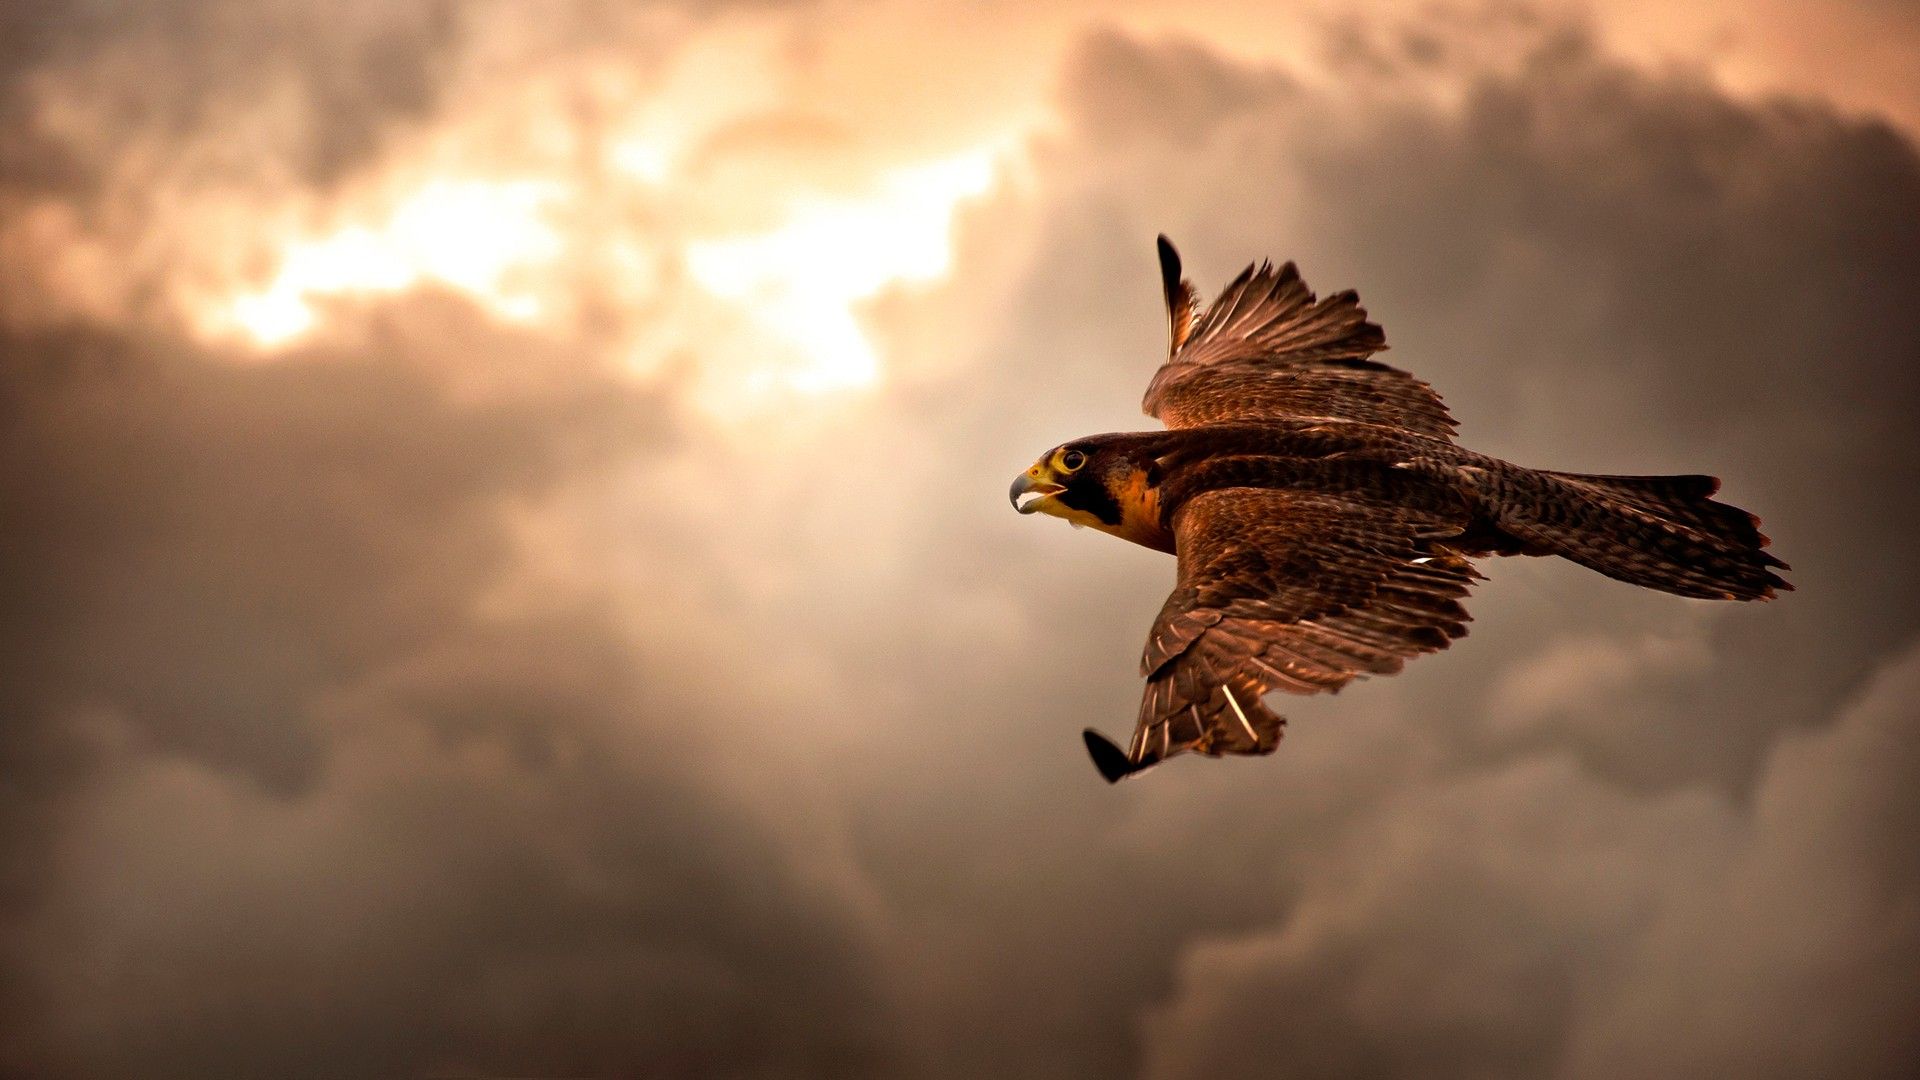 دانلود تصویر پرنده وحشی عقاب در آسمان غروب به شکل رایگان